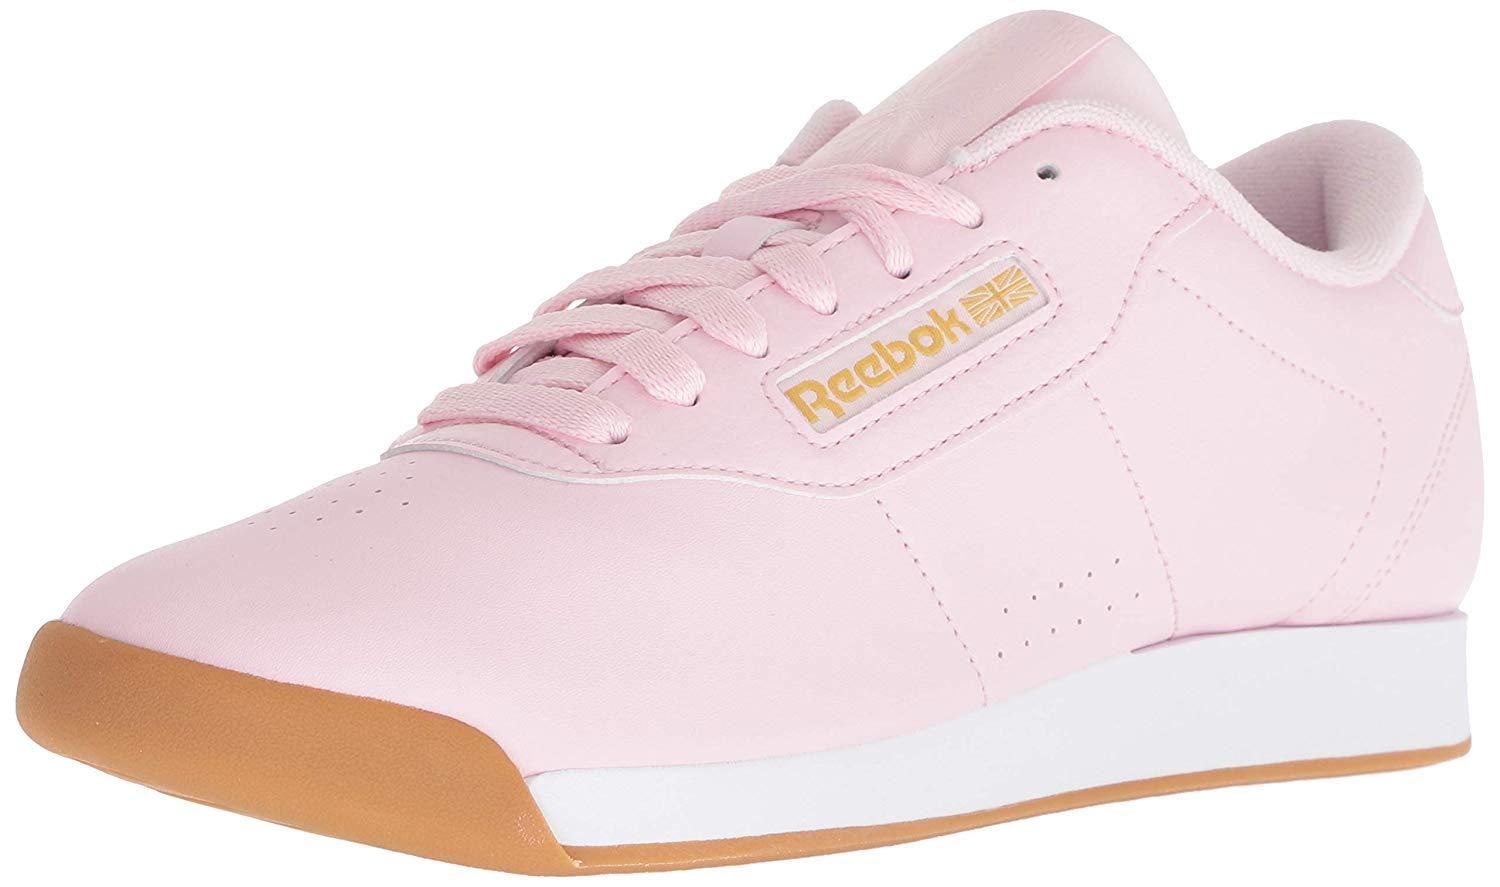 trompet Saga Farvel Reebok Princess Sneaker in Pink/White/Gold Metallic (Pink) - Save 52% - Lyst